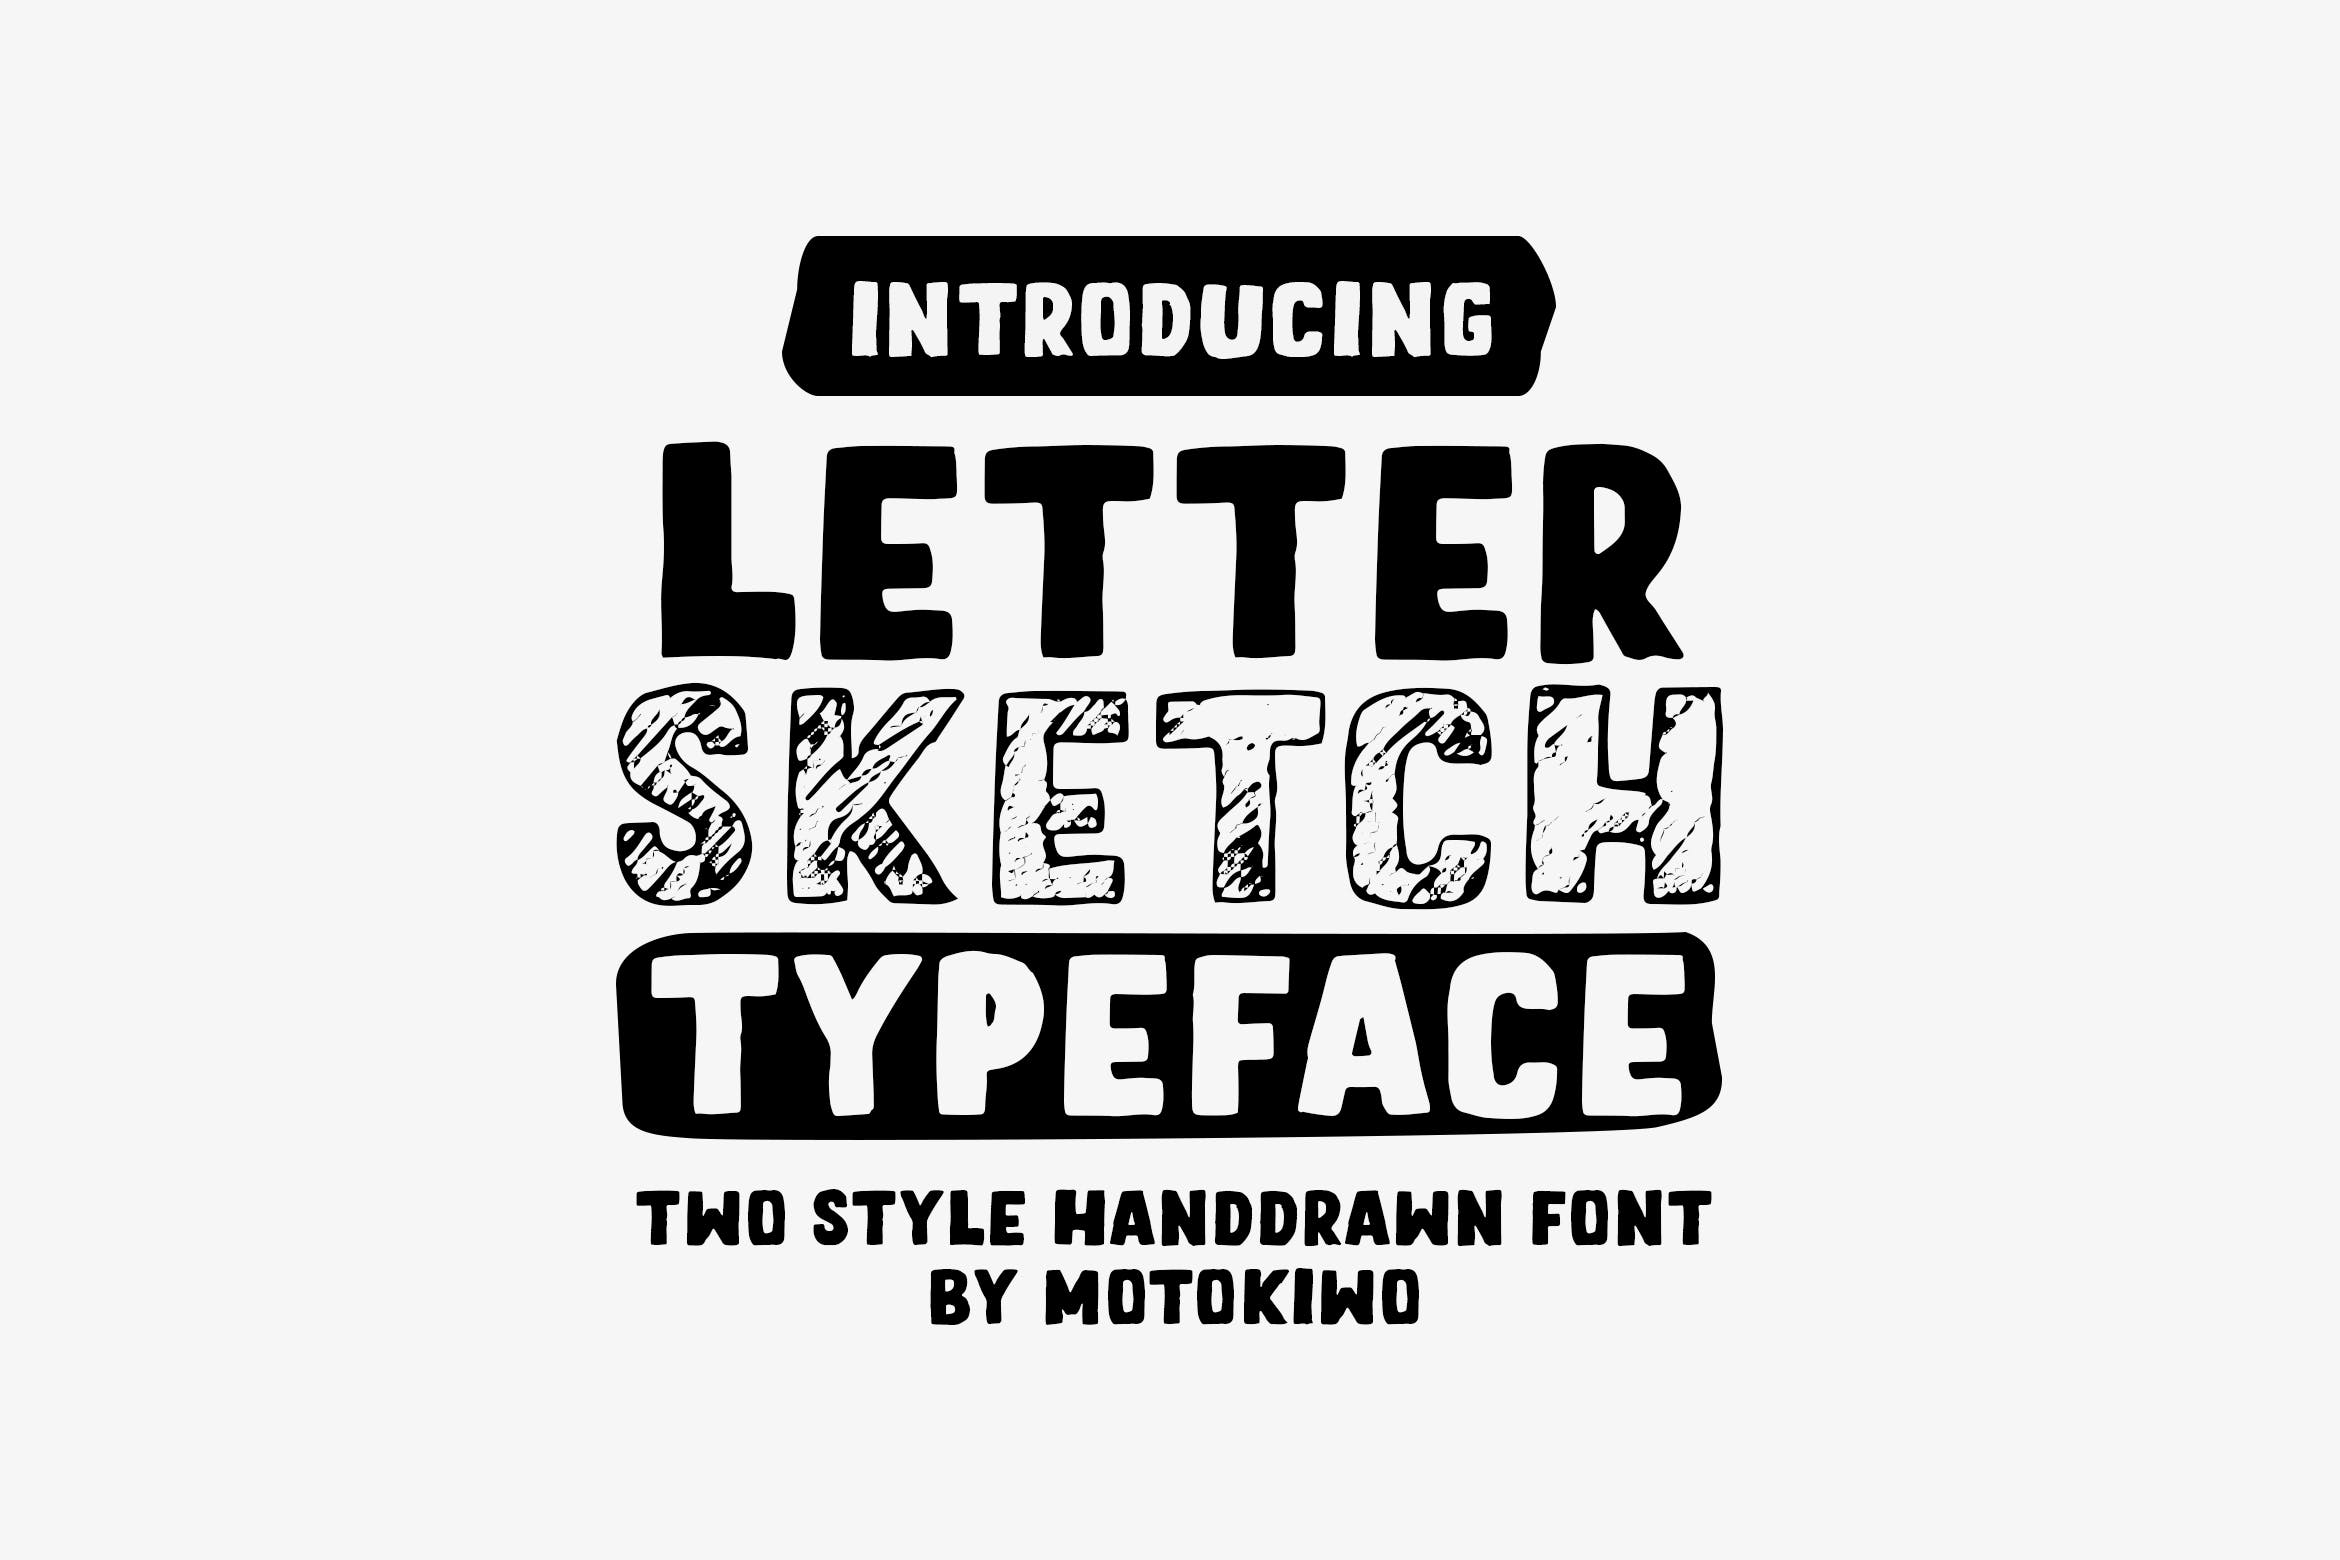 铅笔素描风格＆实心填充英文无衬线字体素材库精选 Letter Sketch Typeface插图